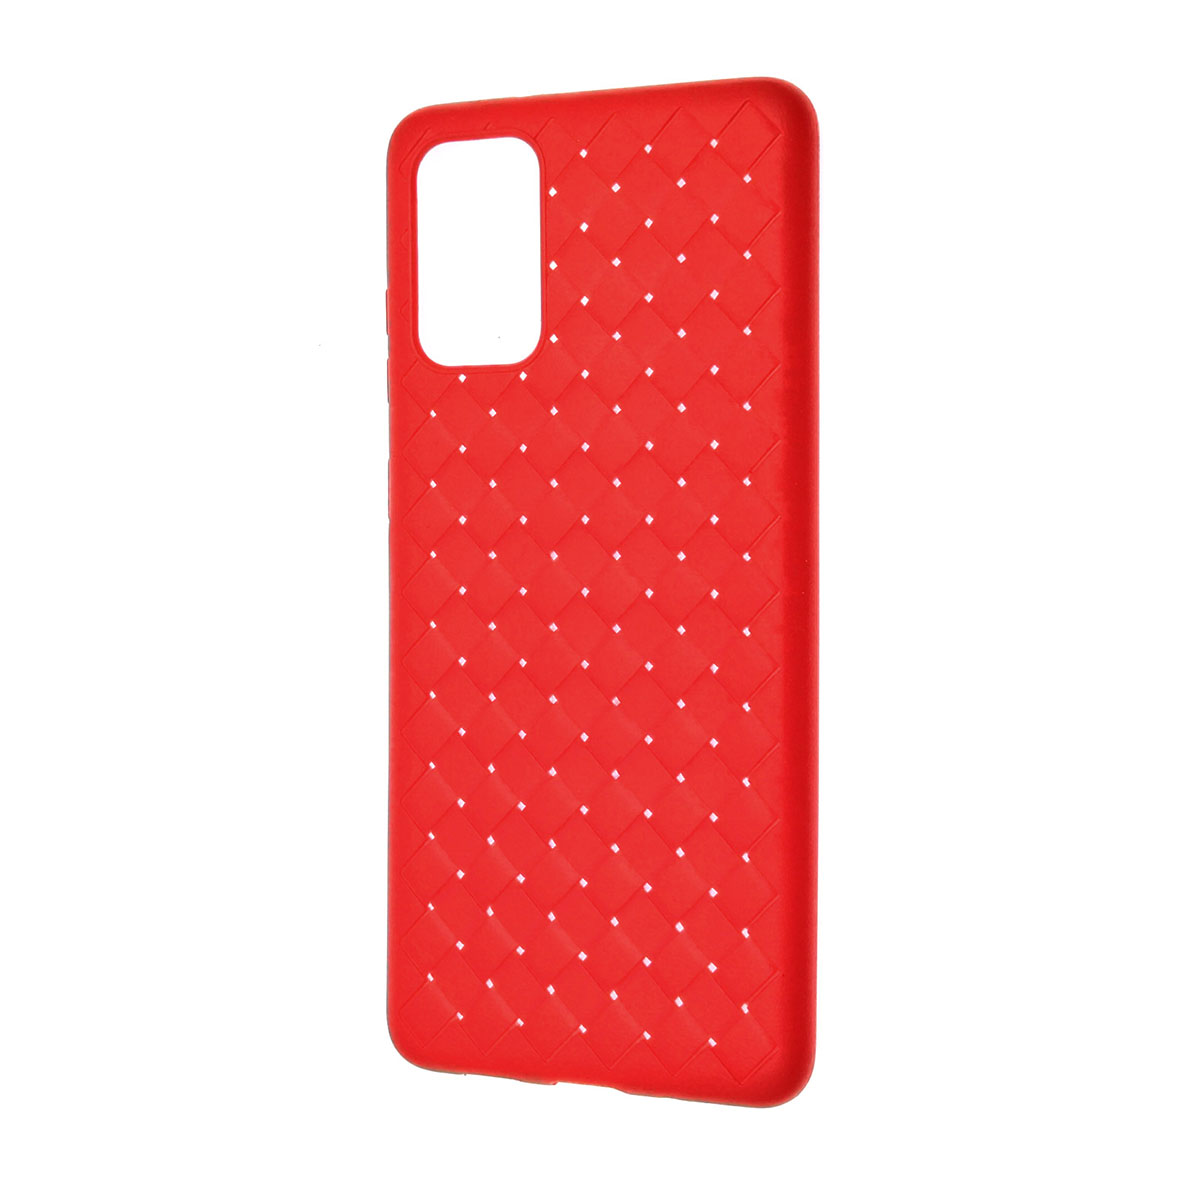 Чехол накладка для SAMSUNG Galaxy S20 Plus (SM-G985), силикон, плетение, цвет красный.